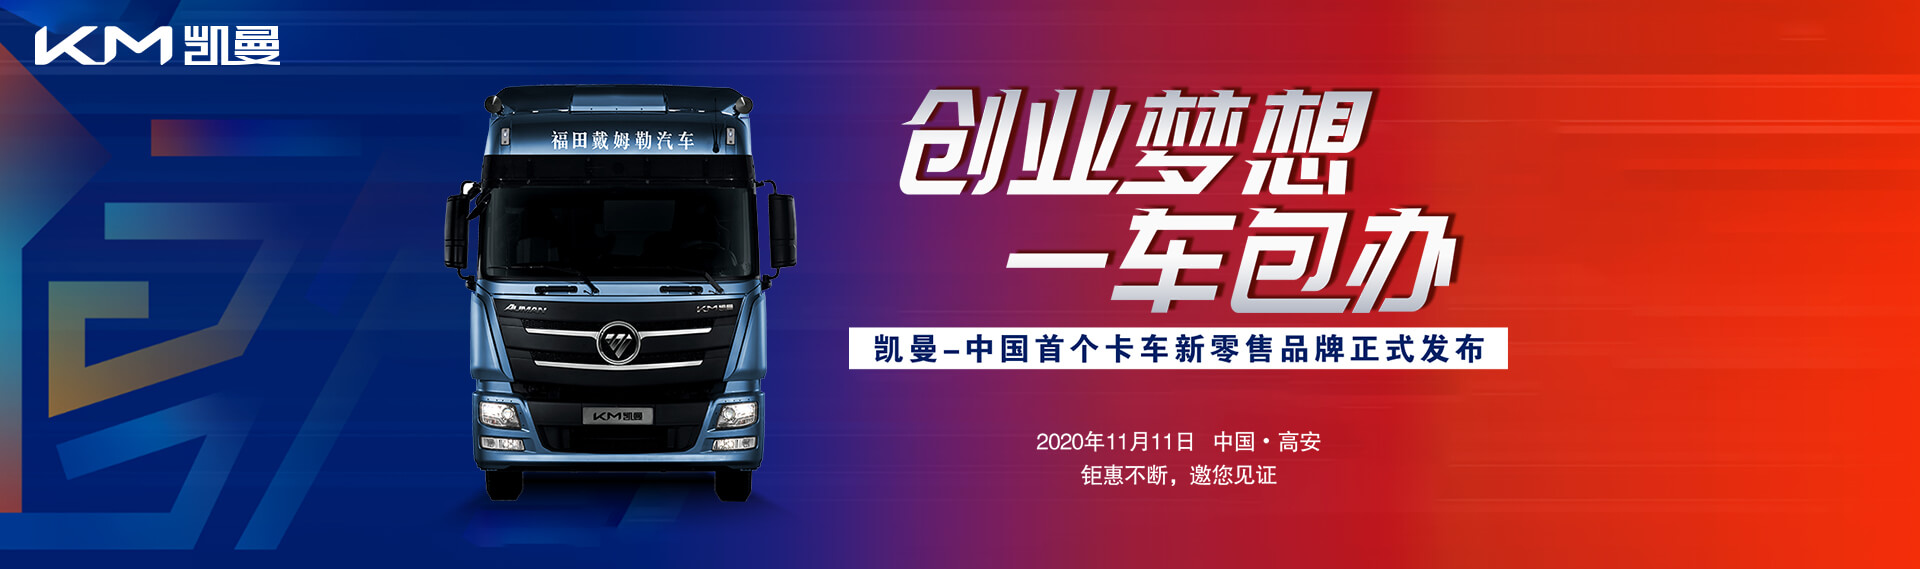 中国首个卡车新零售品牌上市 暨中国物流青年创业计划发布活动